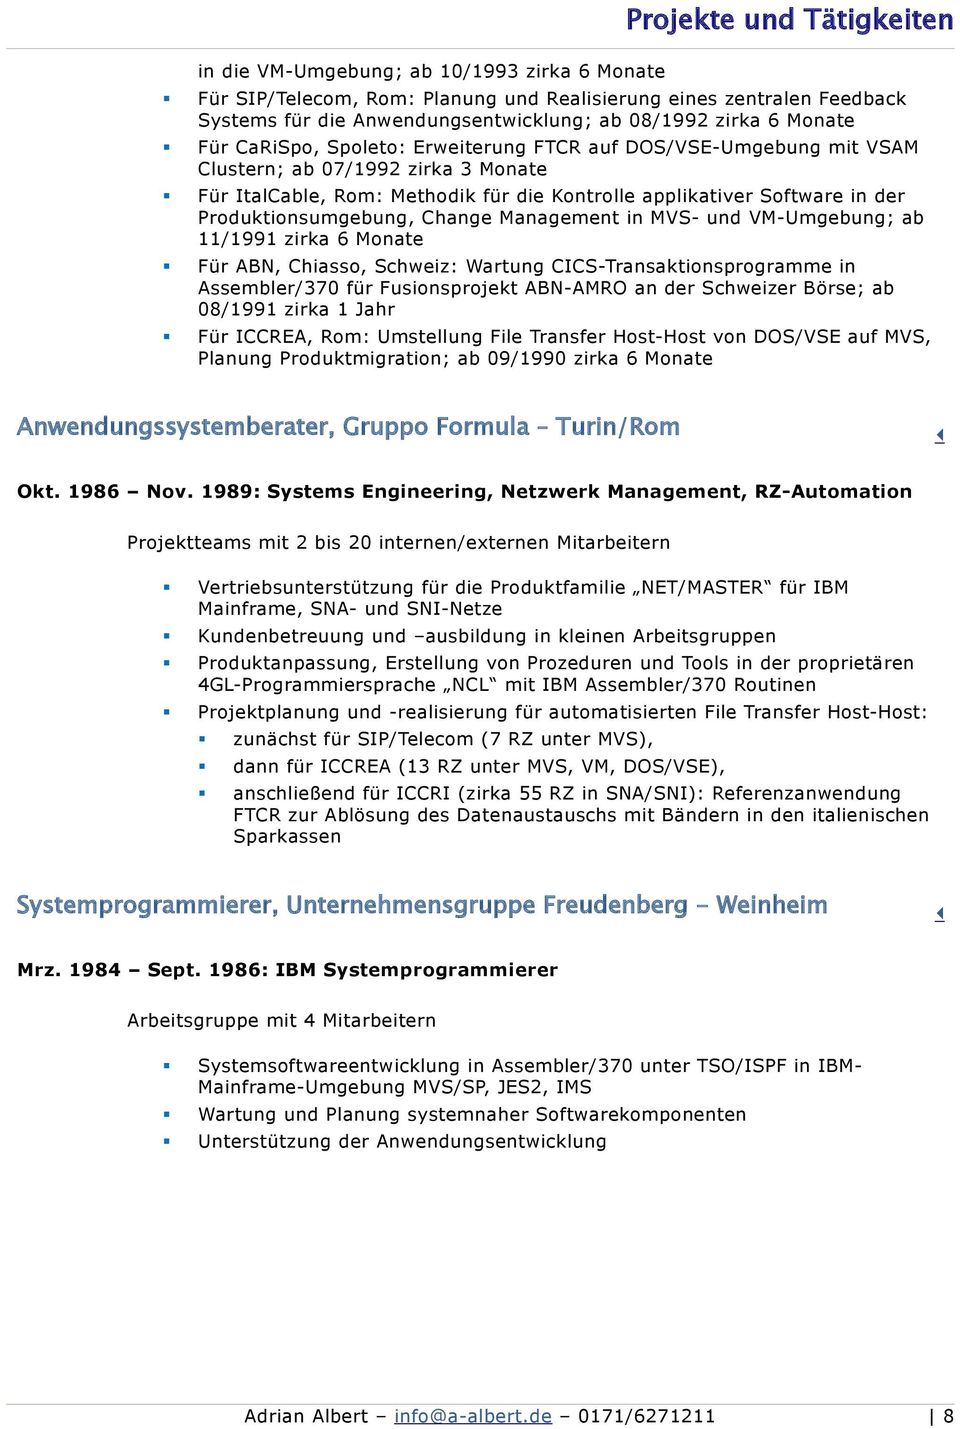 Produktionsumgebung, Change Management in MVS- und VM-Umgebung; ab 11/1991 zirka 6 Monate Für ABN, Chiasso, Schweiz: Wartung CICS-Transaktionsprogramme in Assembler/370 für Fusionsprojekt ABN-AMRO an